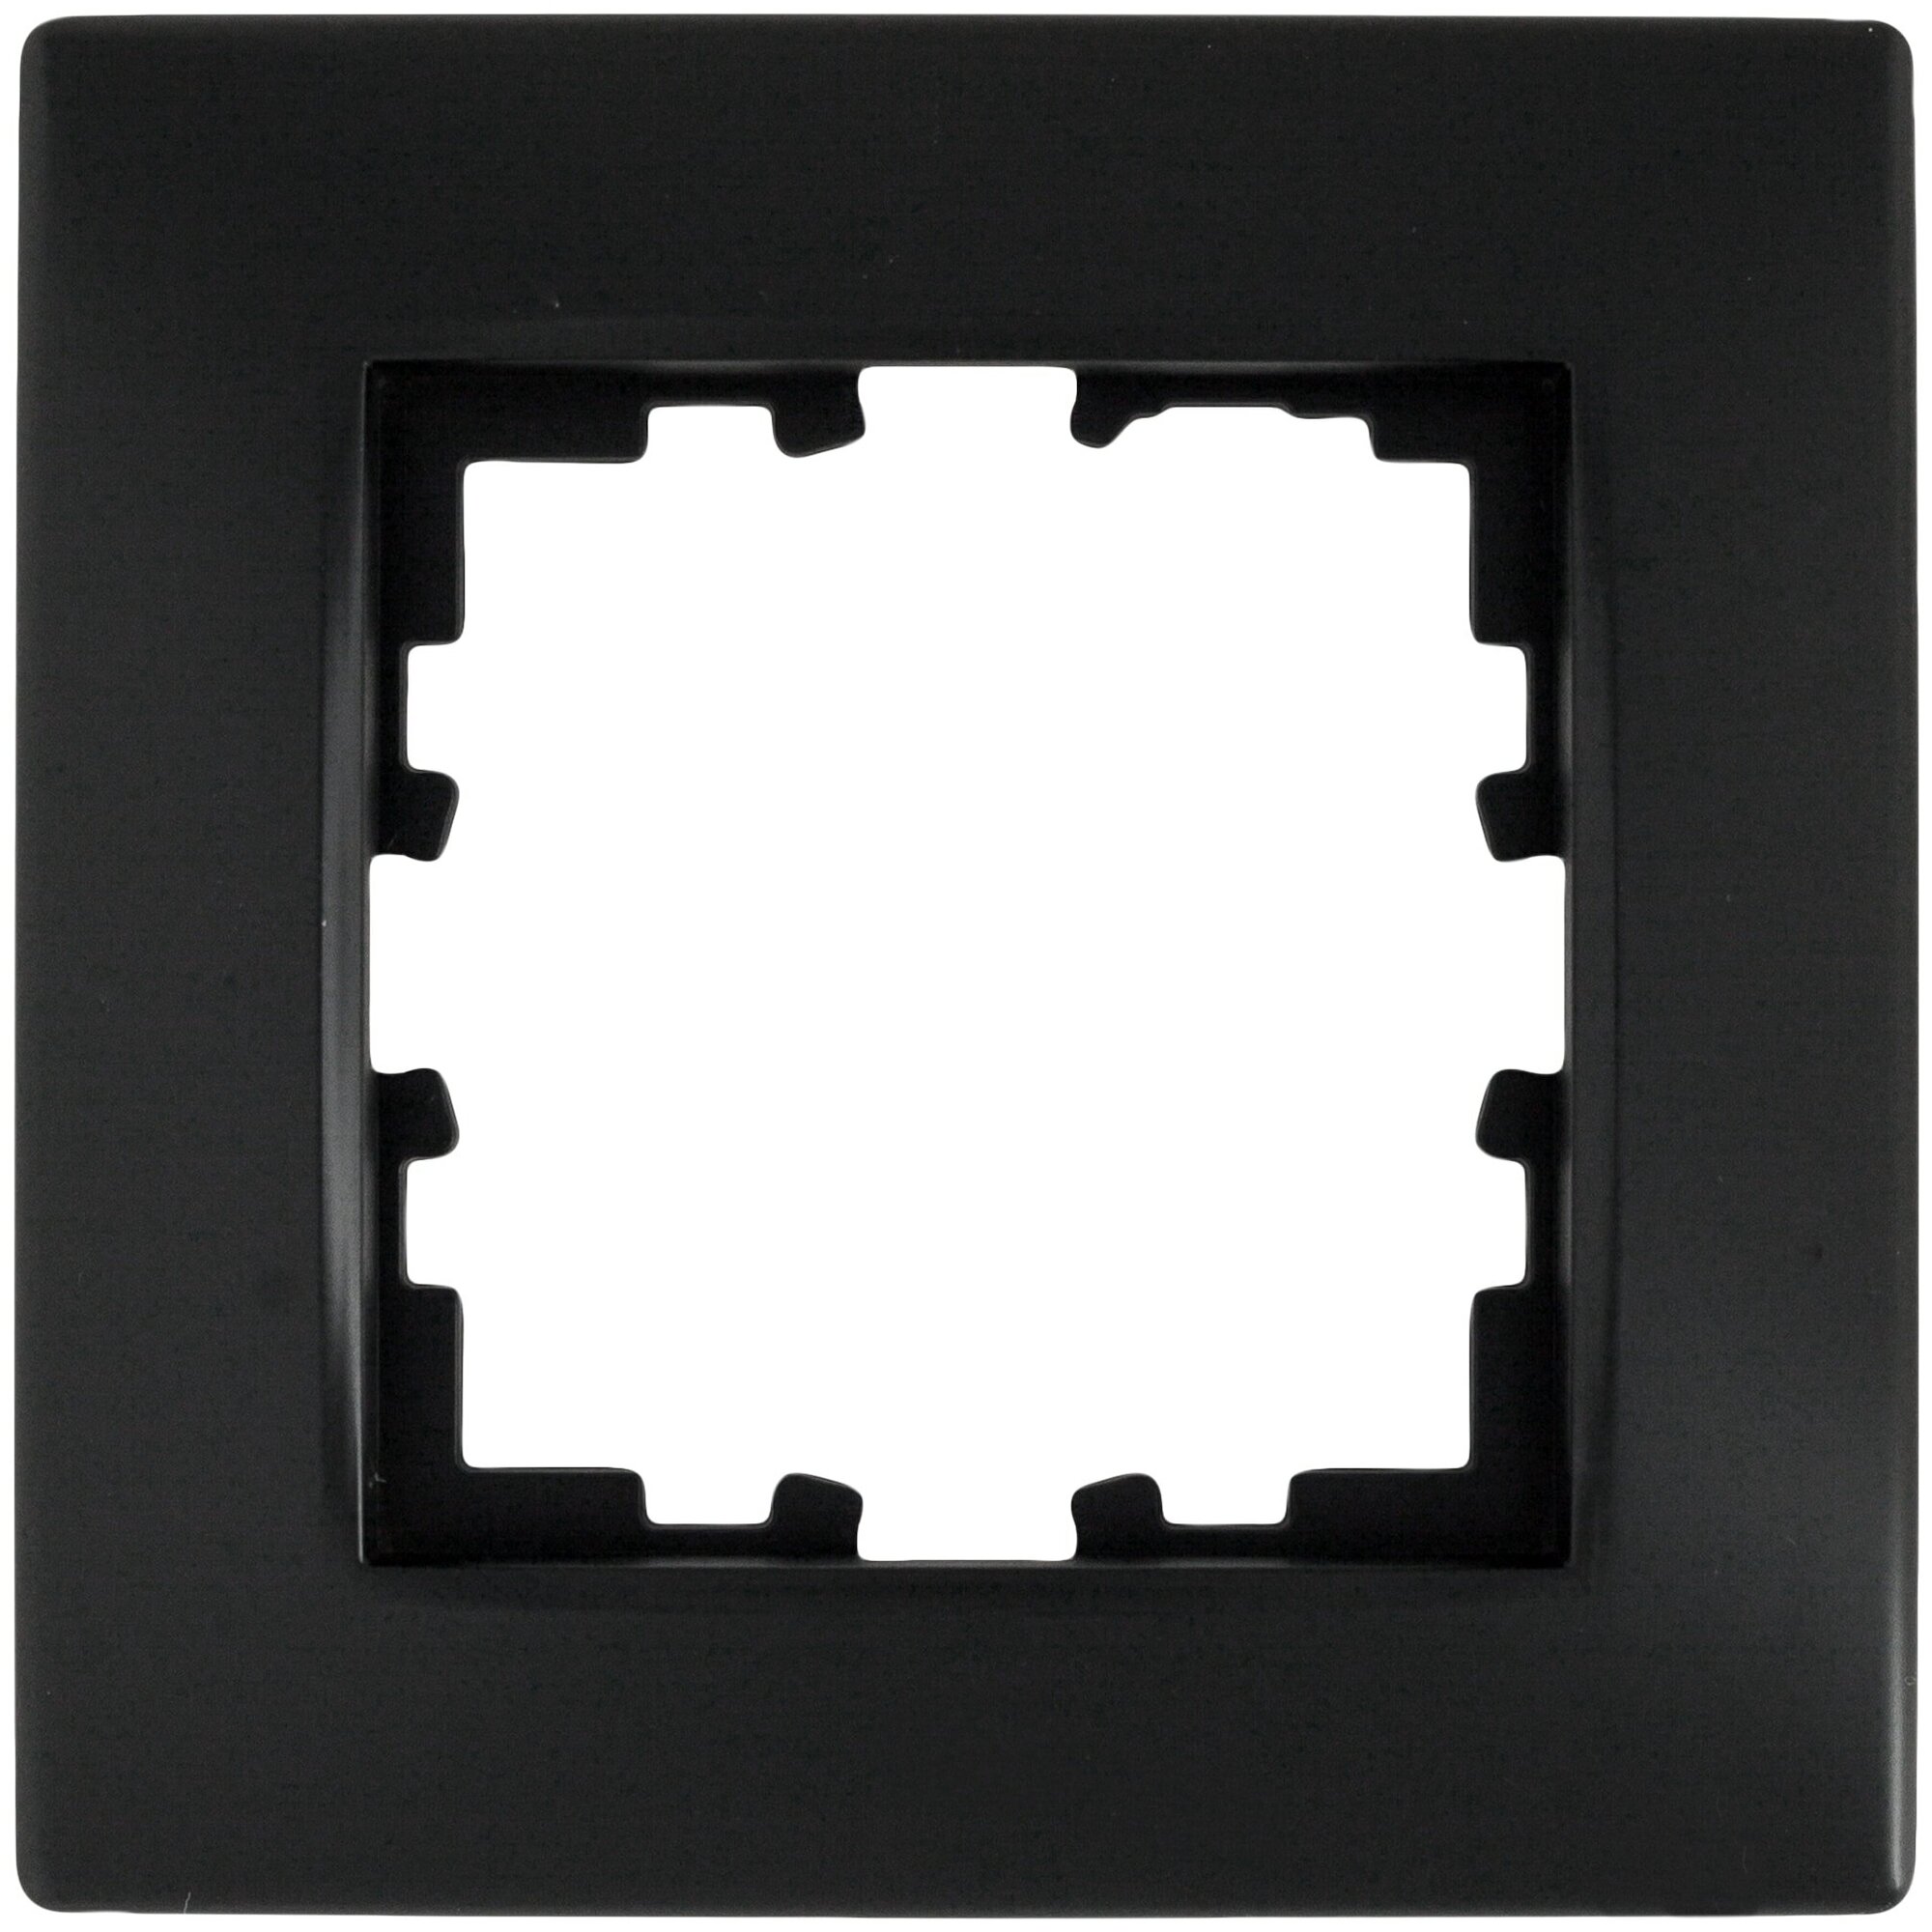 Рамка для розеток и выключателей Виктория сферическая 1 пост цвет чёрный бархат матовый